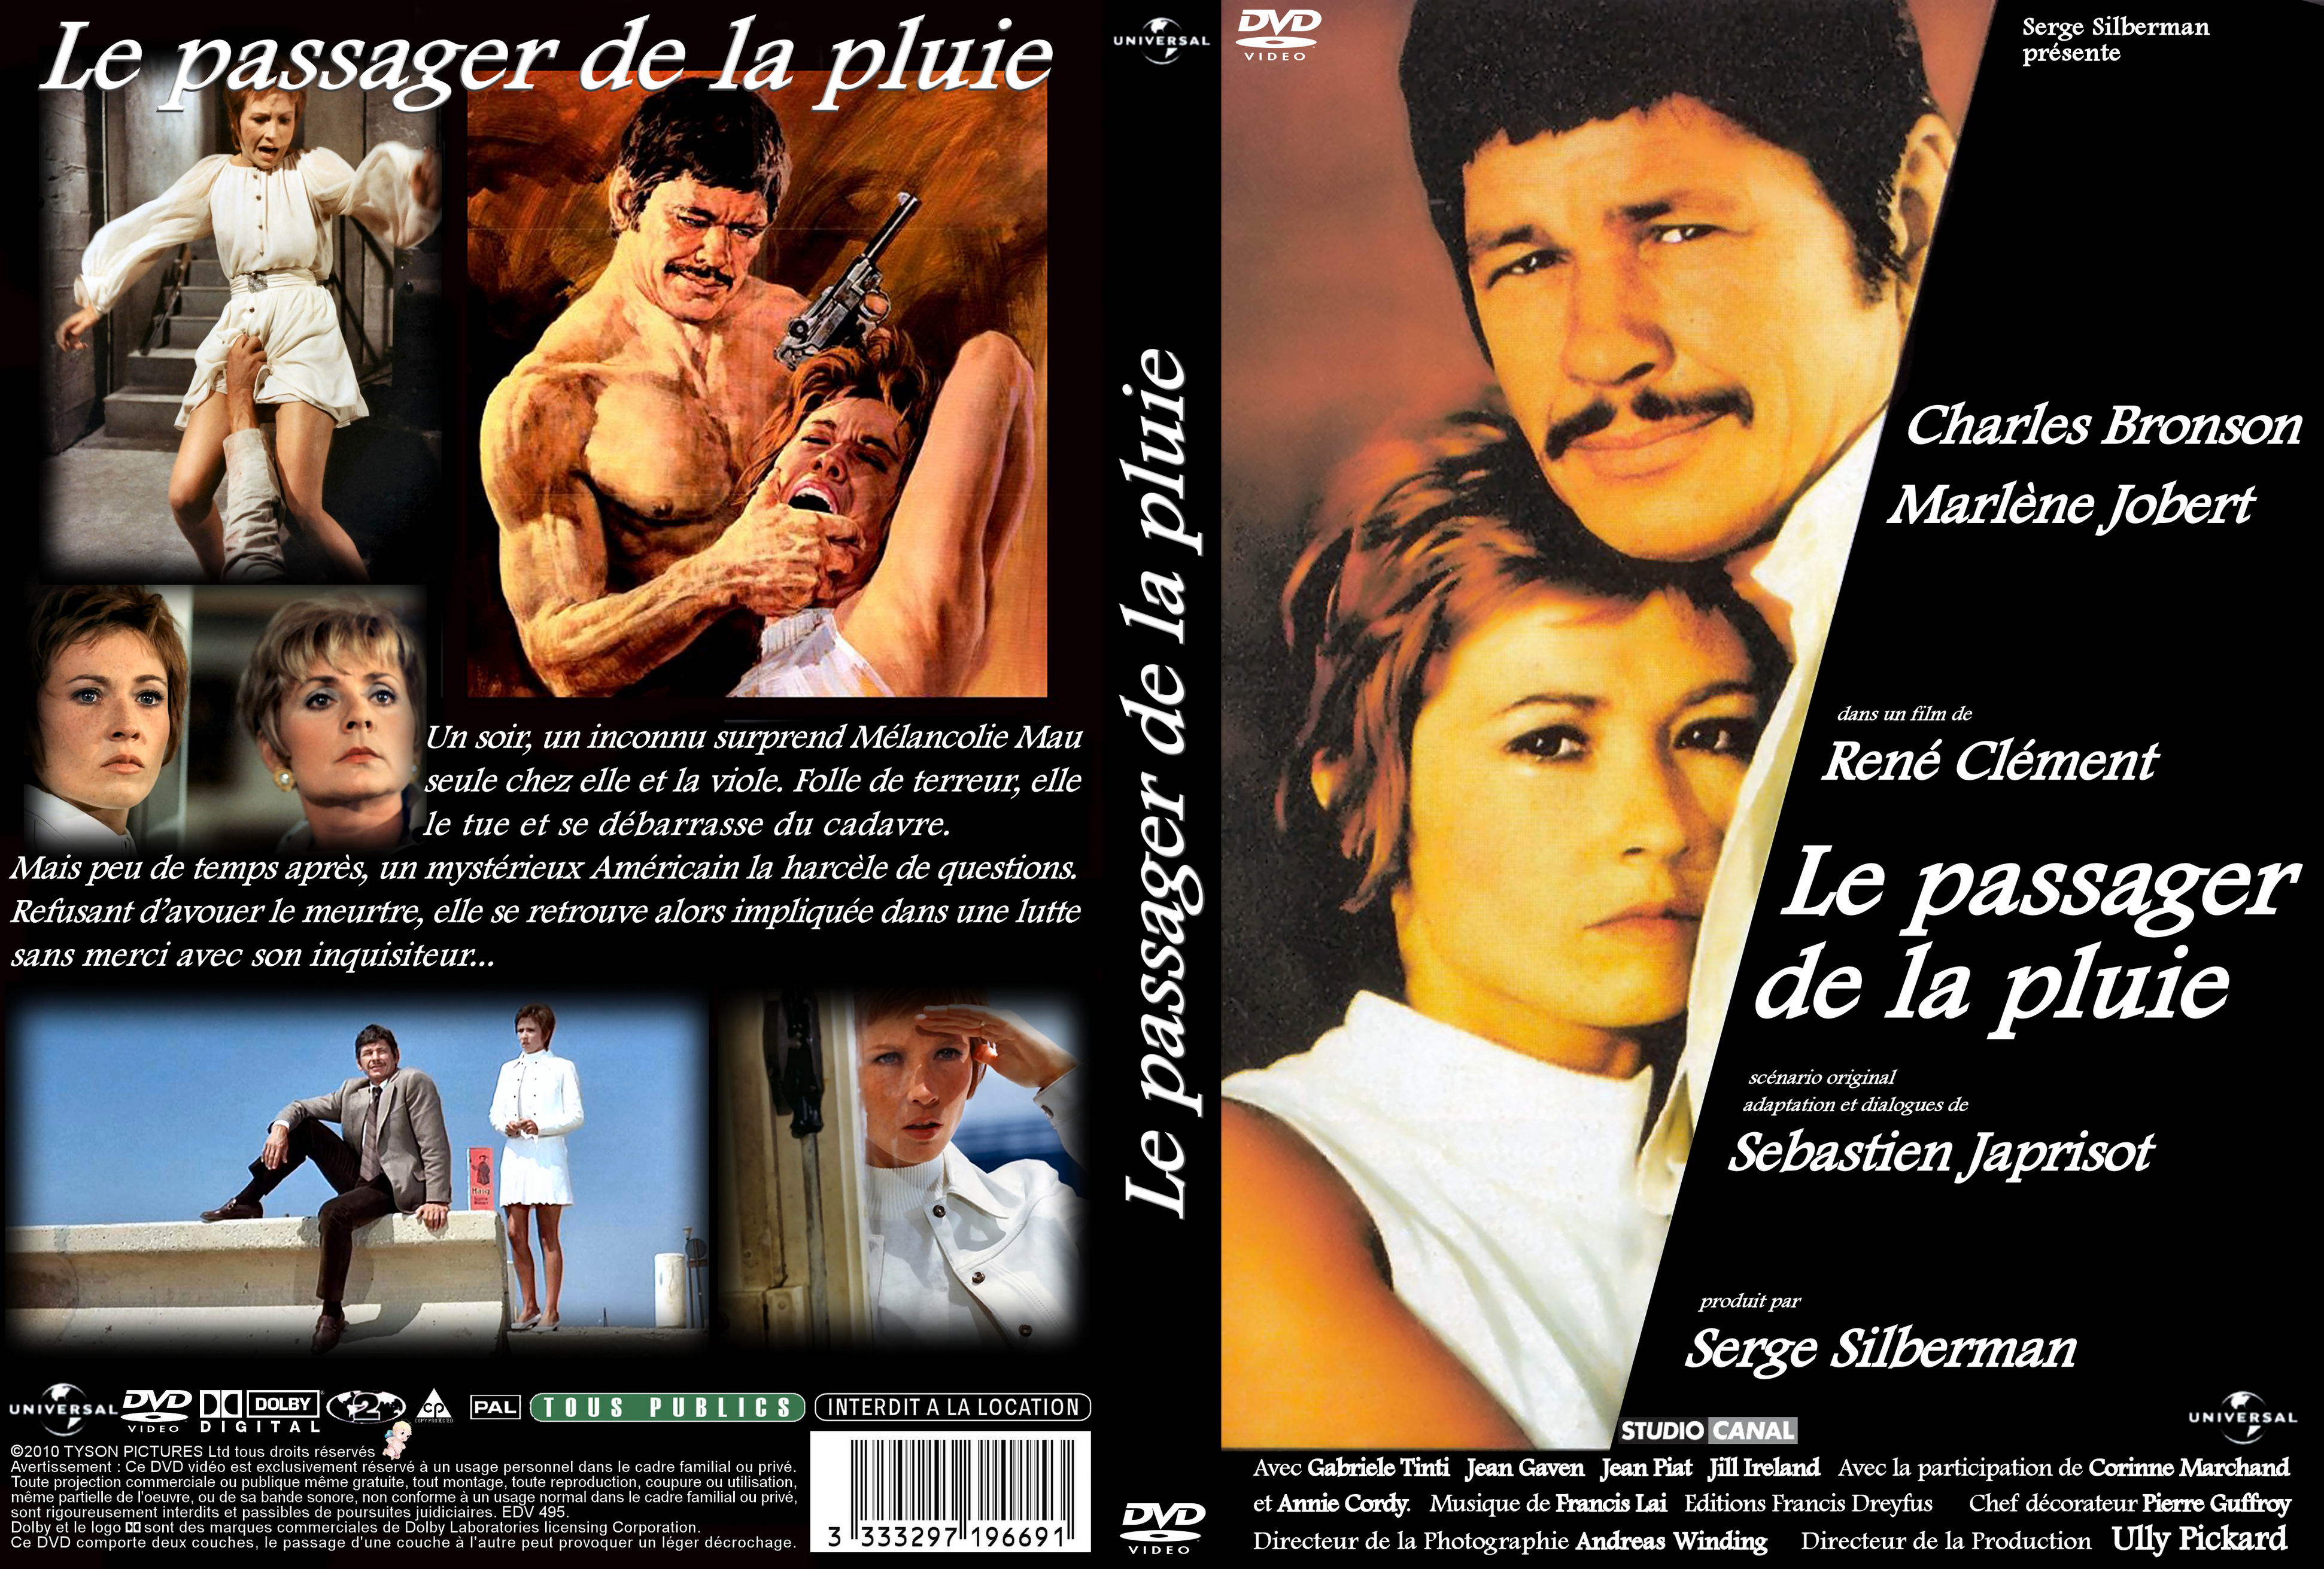 http://www.cinemapassion.com/covers_temp/covers3/Le_passager_de_la_pluie_custom-15213110012011.jpg